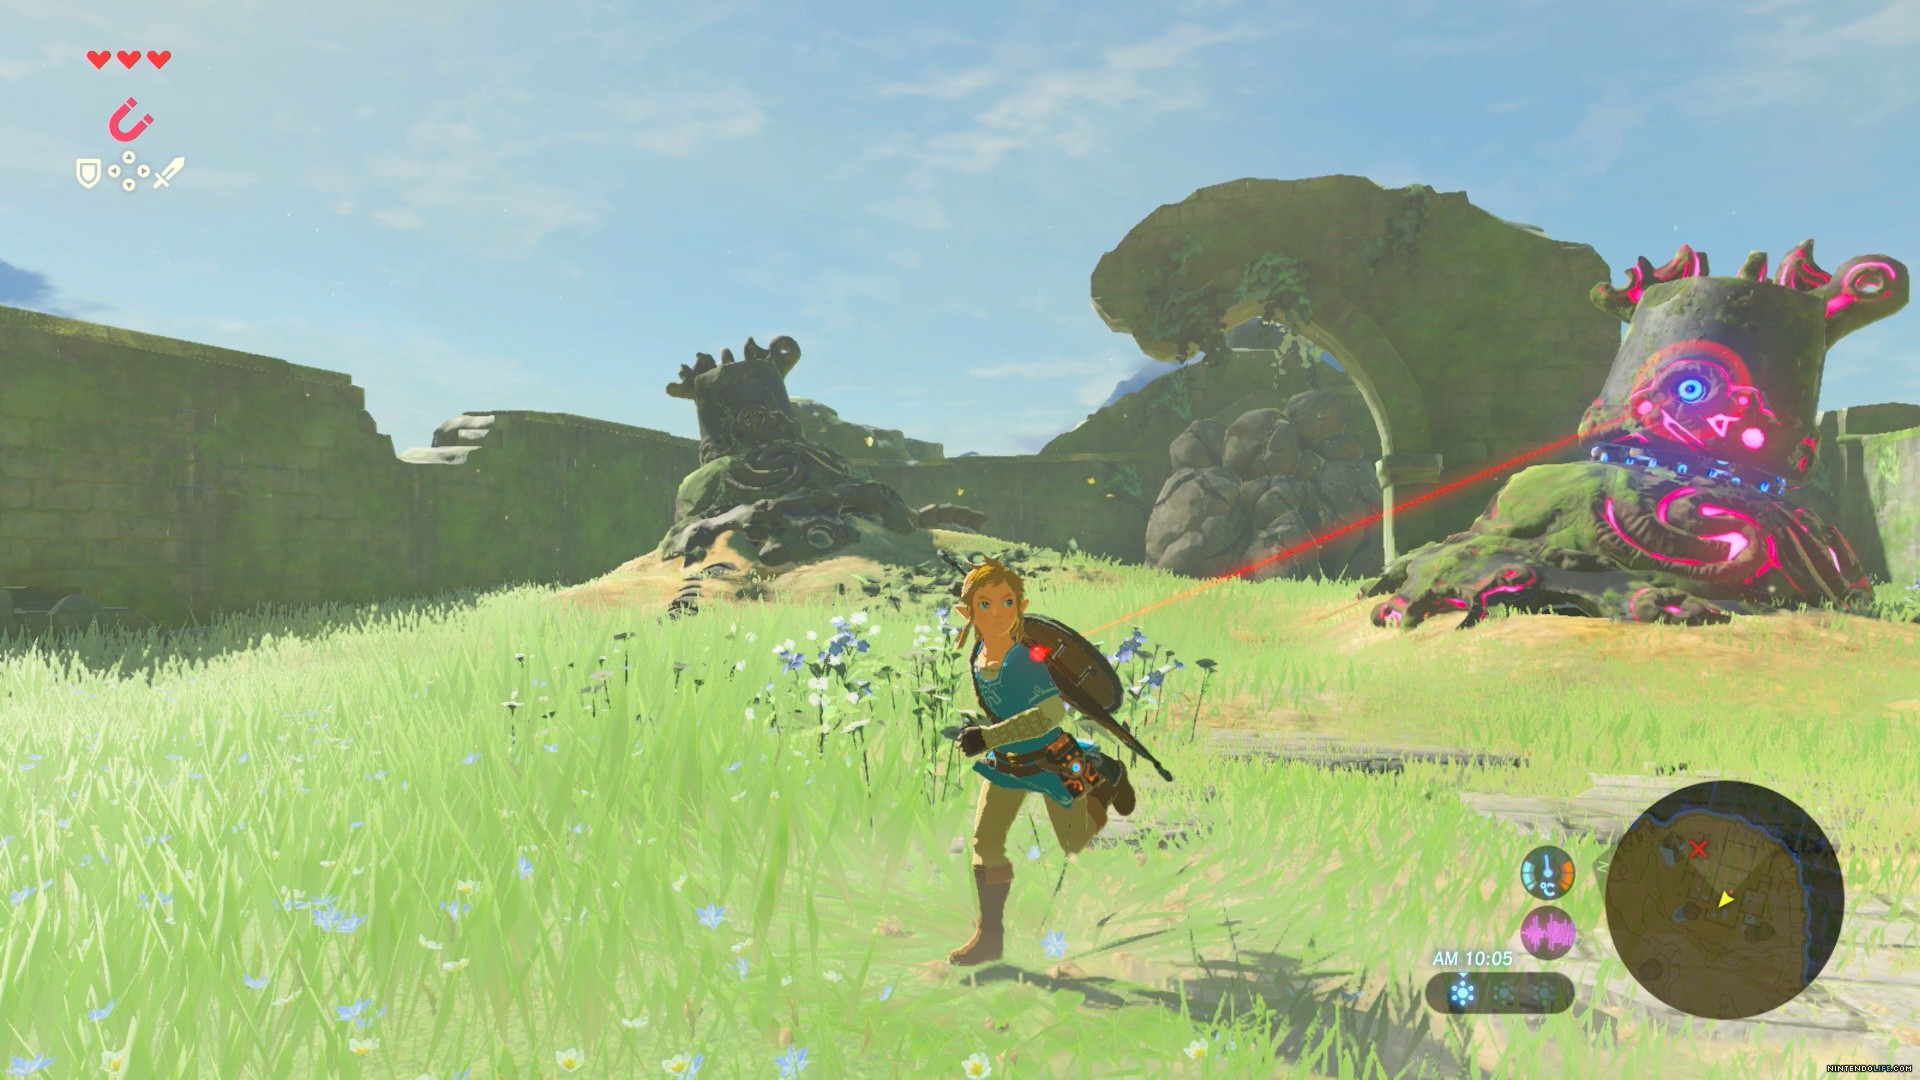 Buy The Legend Of Zelda Breath Of The Wild Switch Nintendo